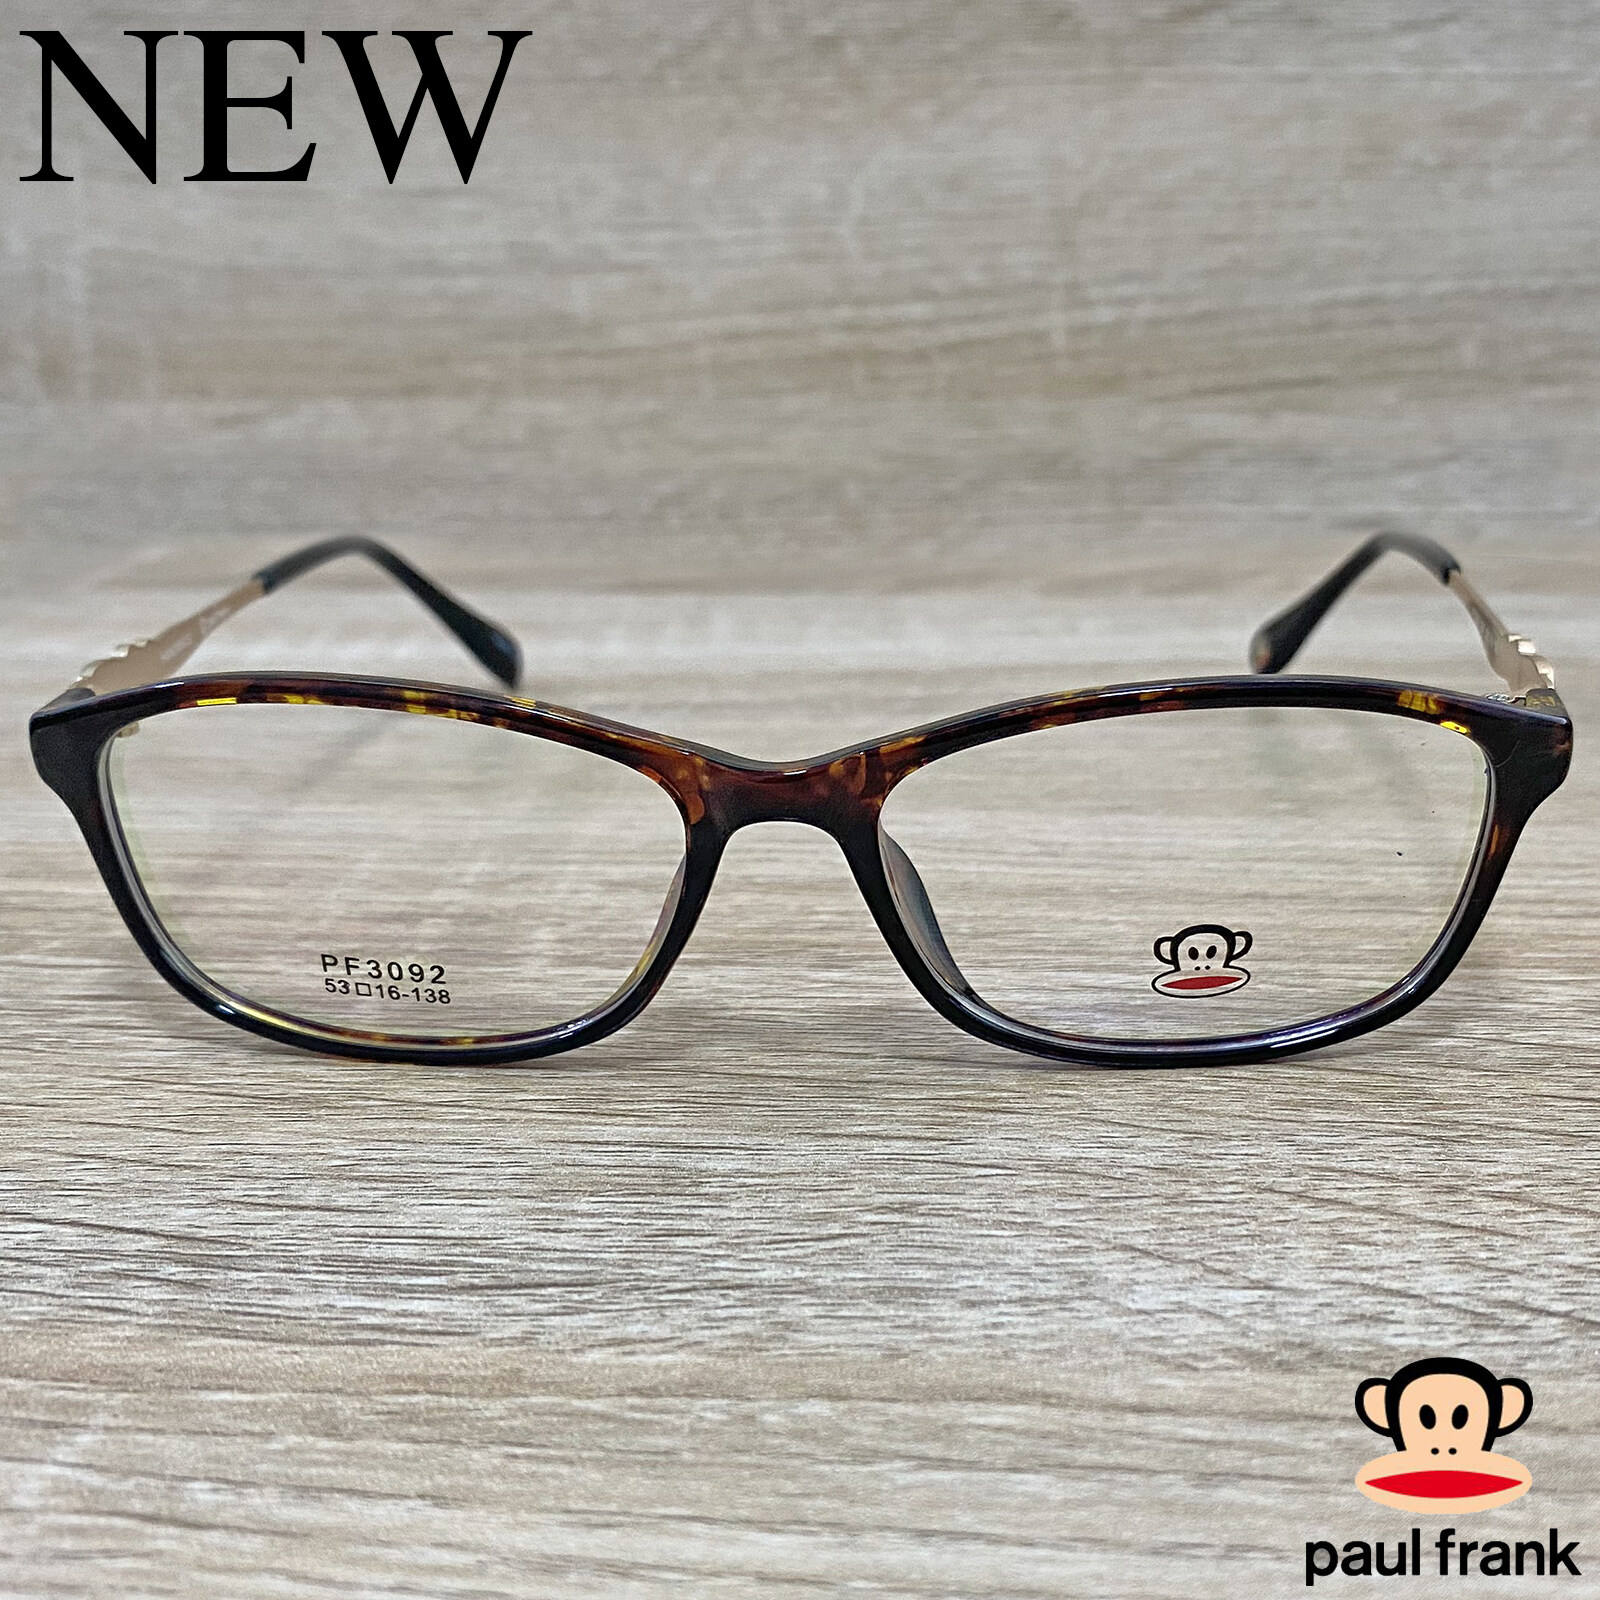 Fashion กรอบแว่นตา สำหรับตัดเลนส์ แว่นตาชาย หญิง แว่นตา รุ่น Paul Frank 3092 สีน้ำตาลกละ กรอบเต็ม ทรงเหลี่ยม ขาข้อต่อ วัสดุ TR 90 รับตัดเลนส์ทุกชนิด